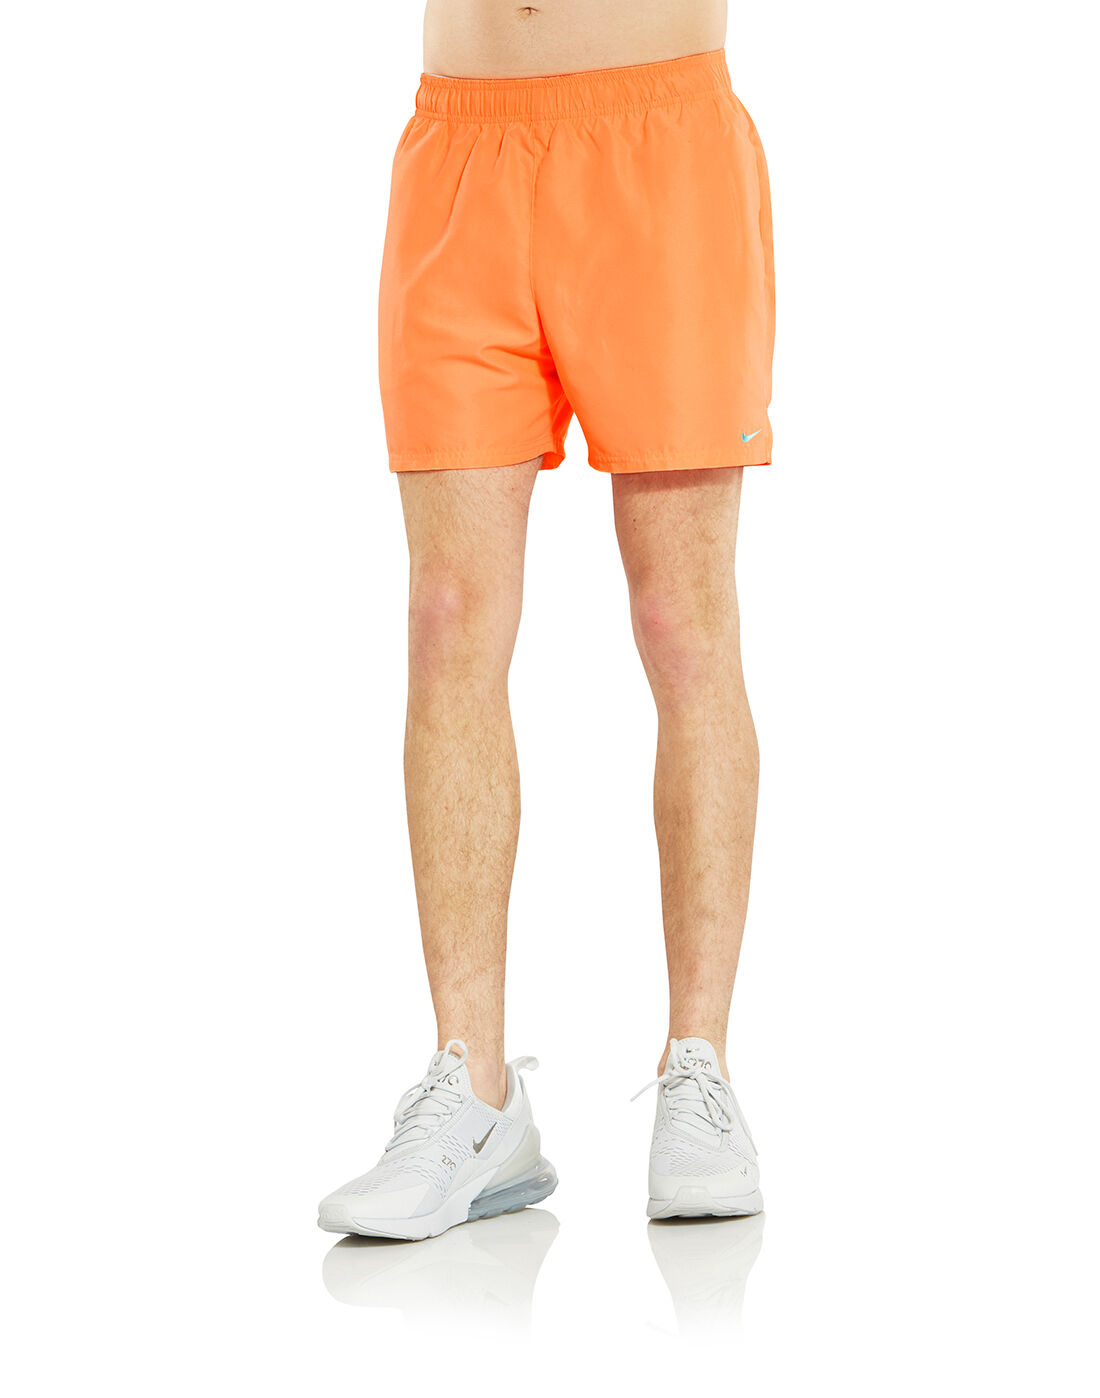 mens nike shorts orange